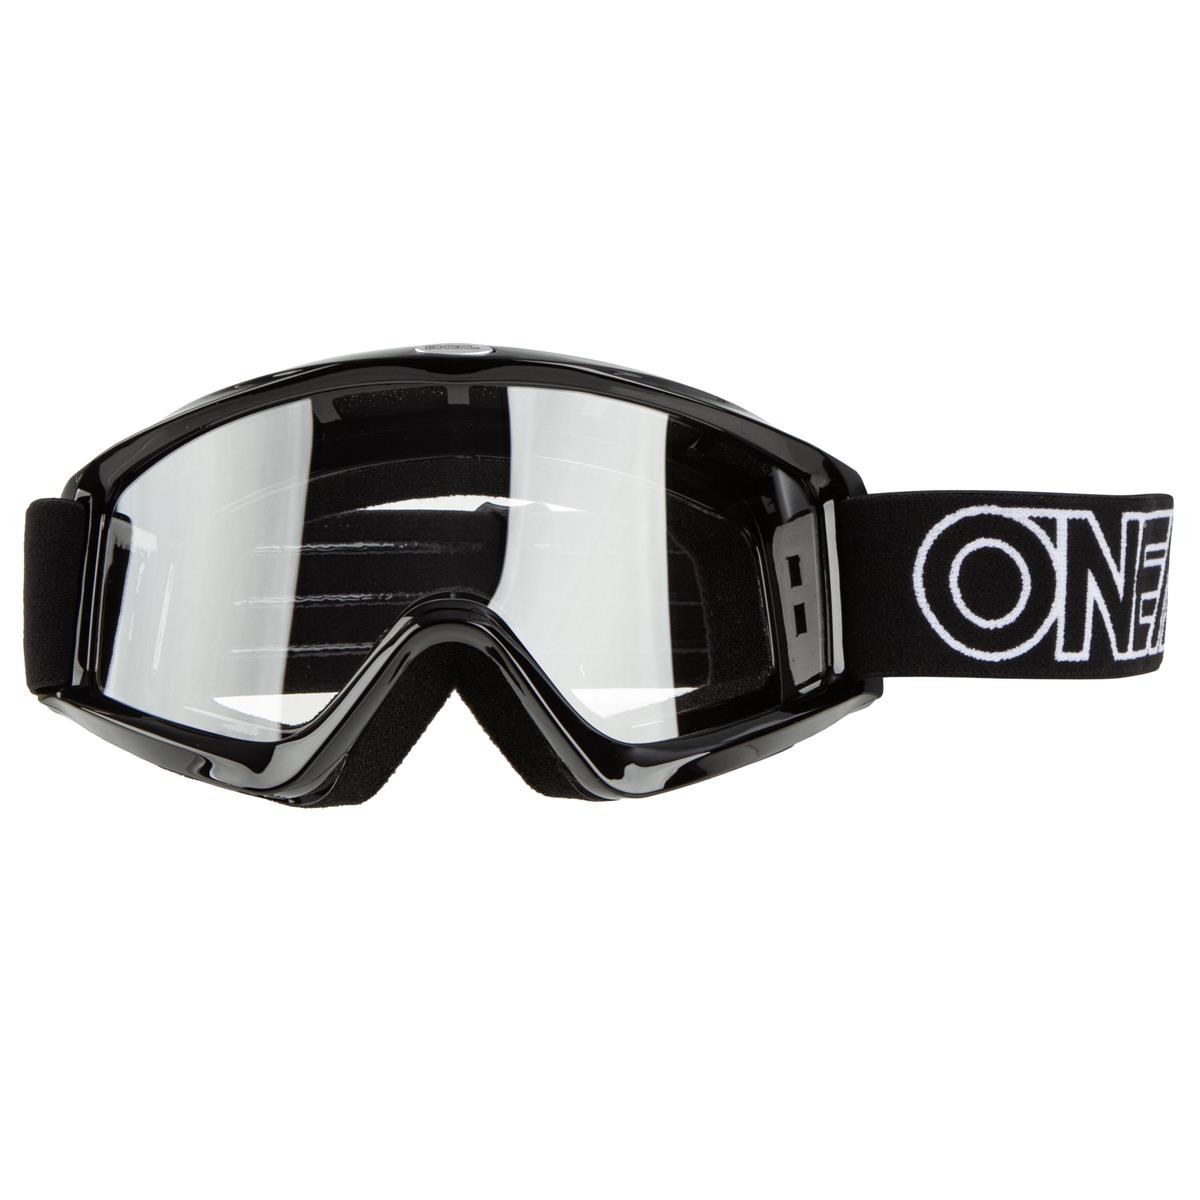 ONeal B-Zero Goggle Moto Cross Downhill Cross MX Brille DH Enduro Bzero Motorrad